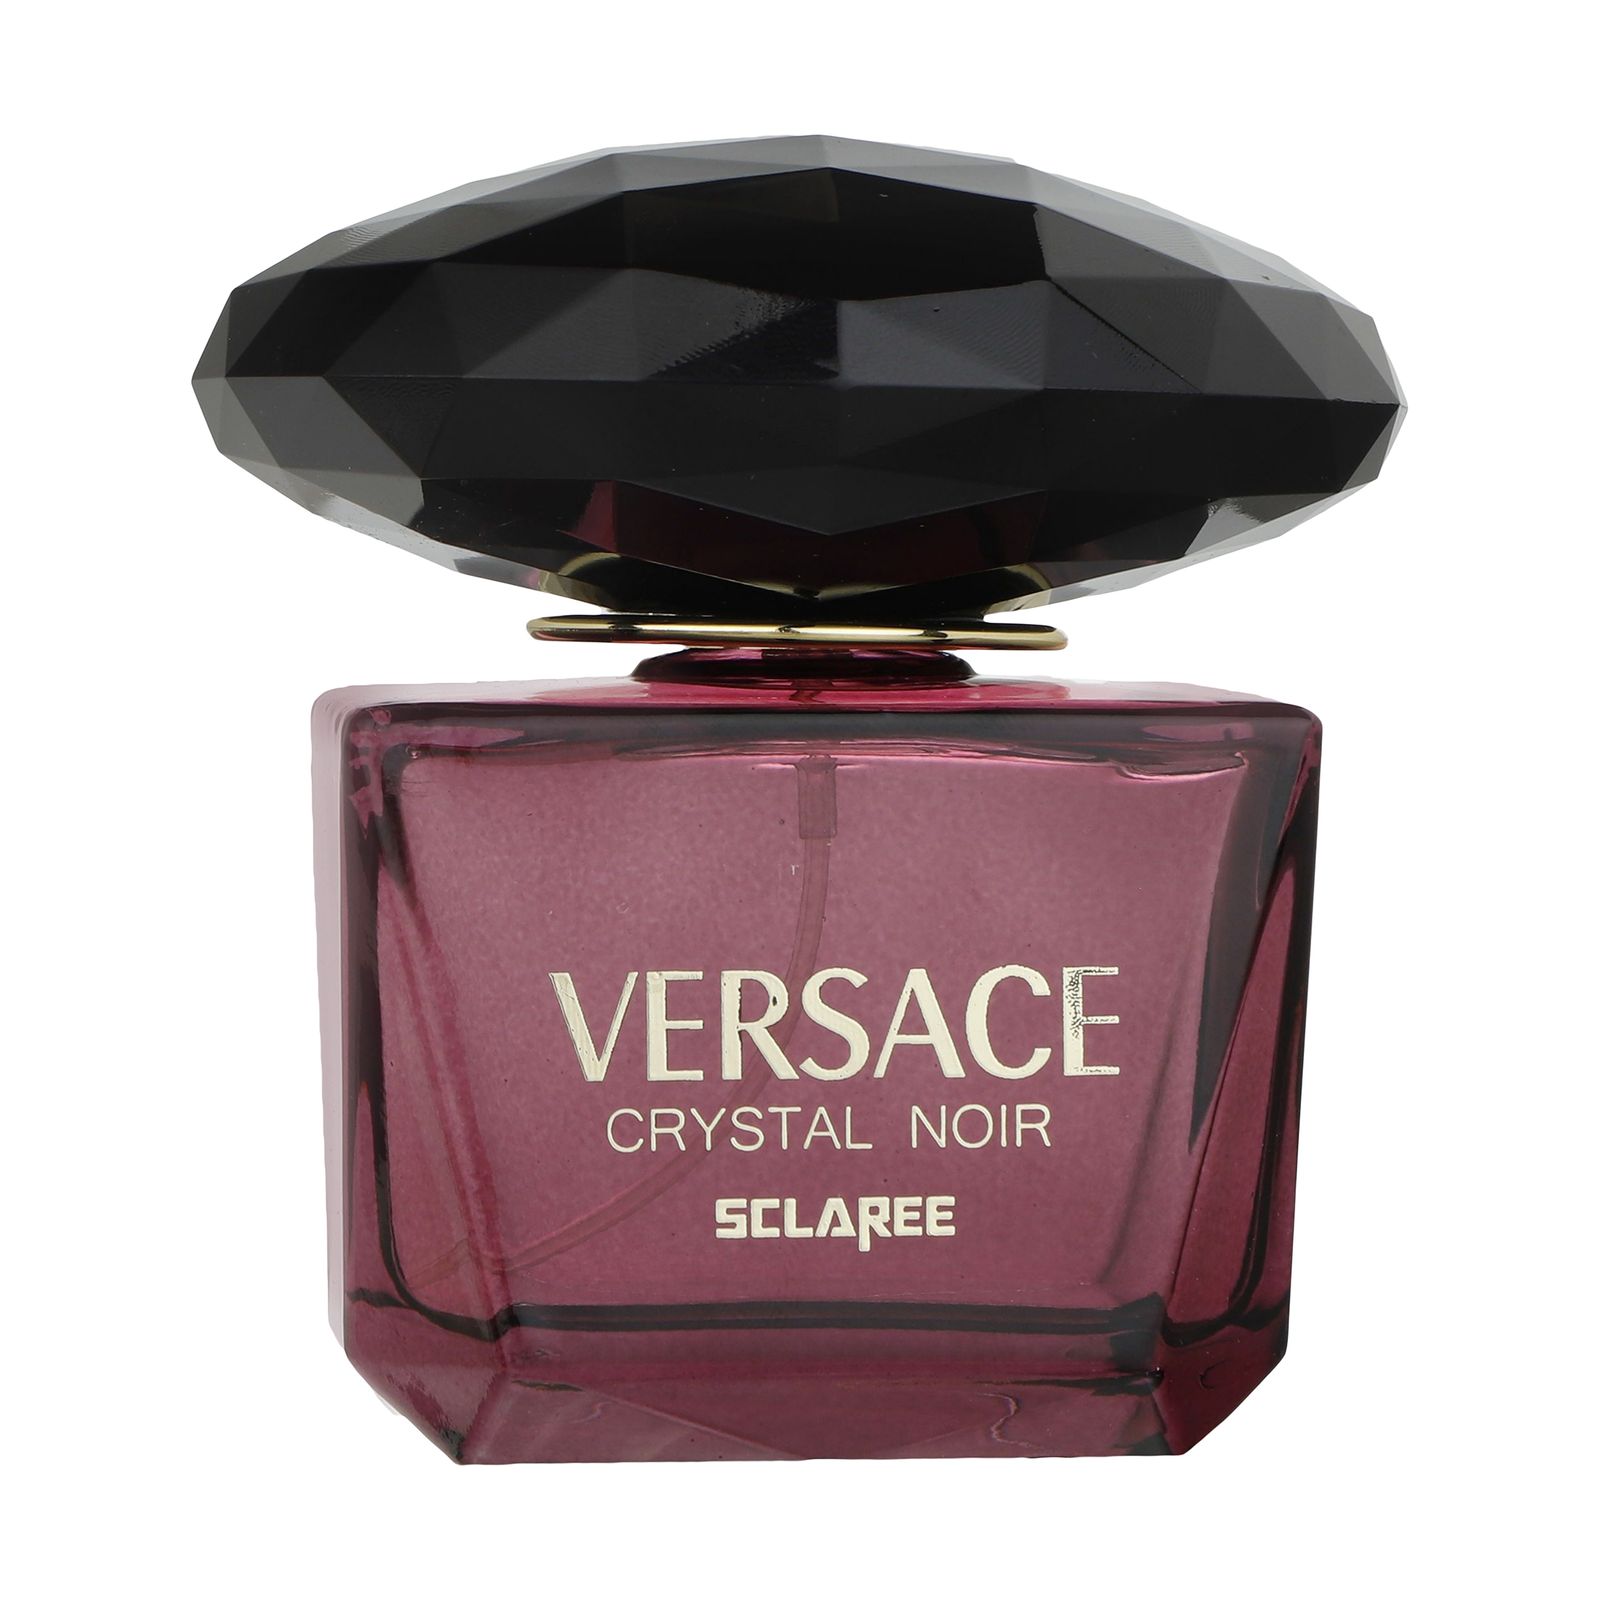 ادو پرفیوم زنانه اسکلاره مدل Versace Crystal Noir حجم 100 میلی لیتر -  - 1